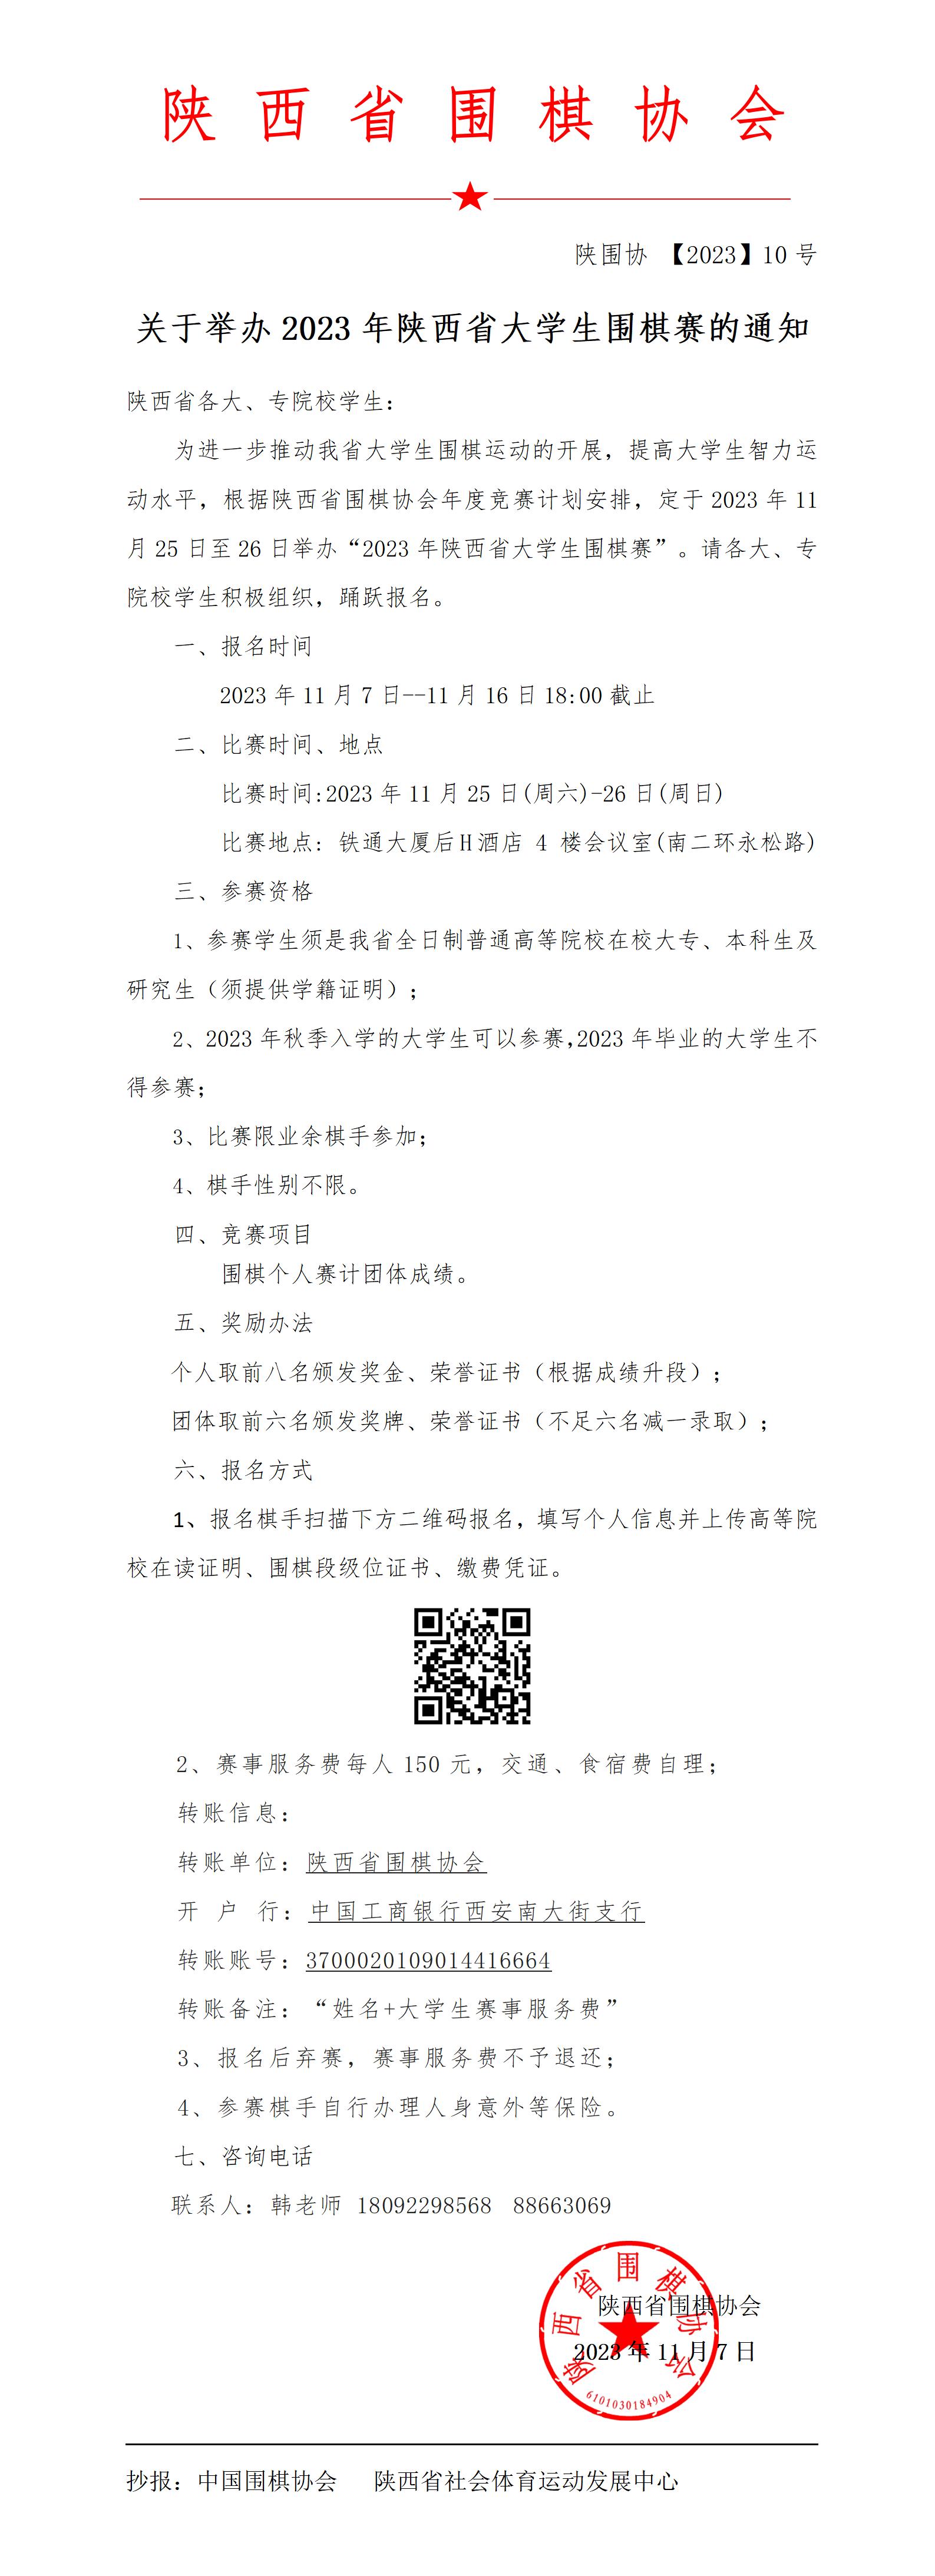 关于举办2023年陕西省大学生围棋赛的通知_01(1).jpg